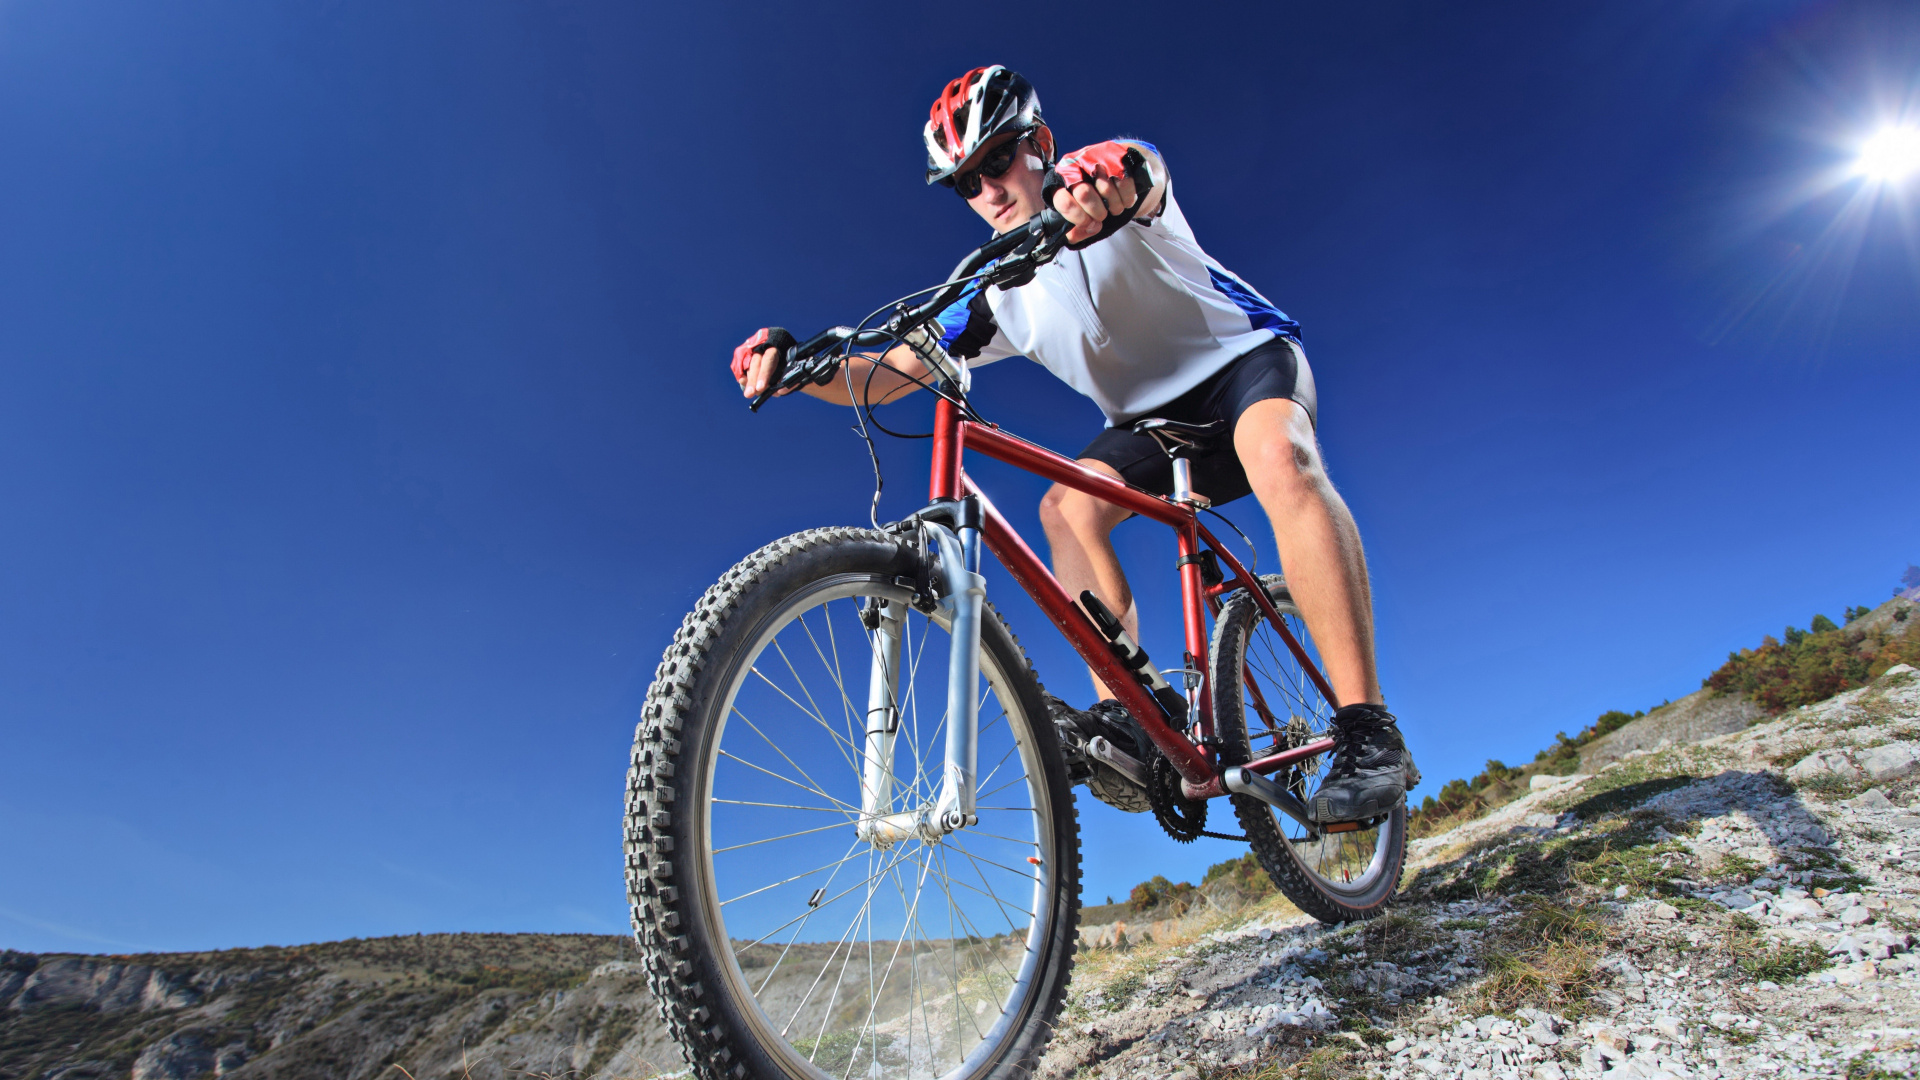 自行车, 高山山地自行车, 山地自行车, 骑自行车, 循环的运动 壁纸 1920x1080 允许